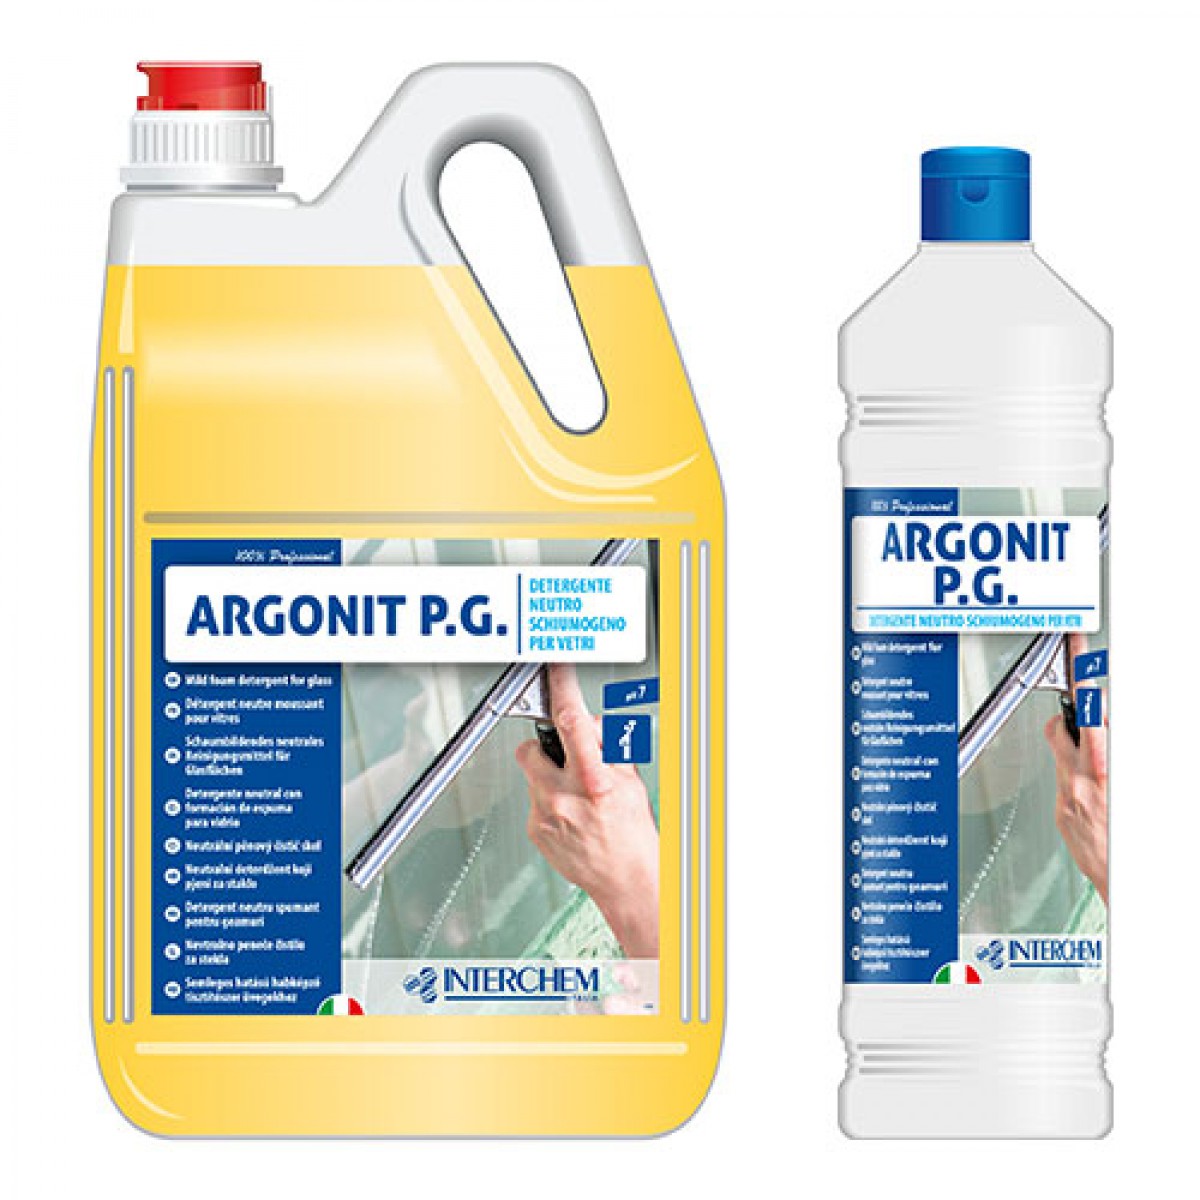 ARGONIT P.G. - 1 lit ili 5 lit / Koncentrat / Neutralni detergent za čišćenje stakla koji pjeni / Velika moć čišćenja i kvašenja